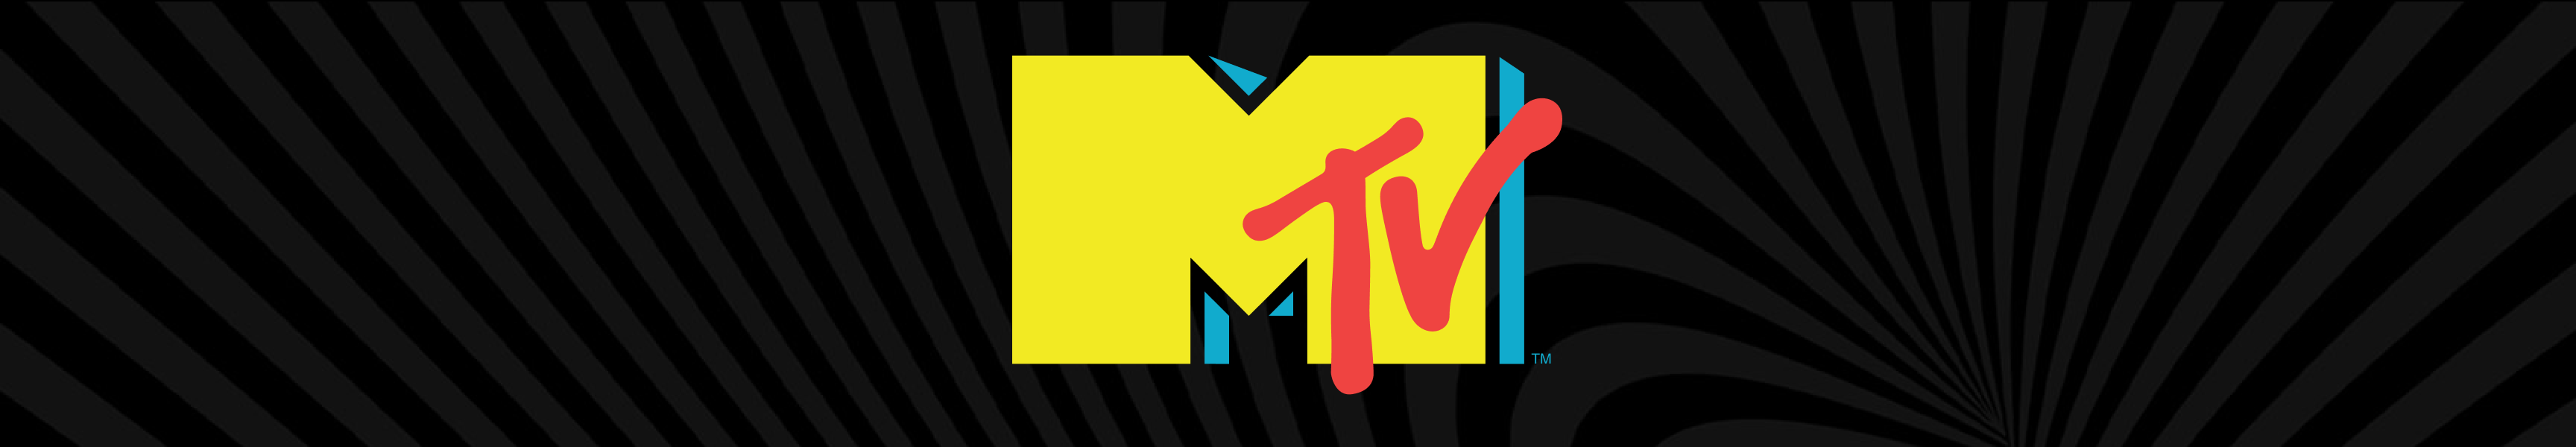 MTV Pint Glasses